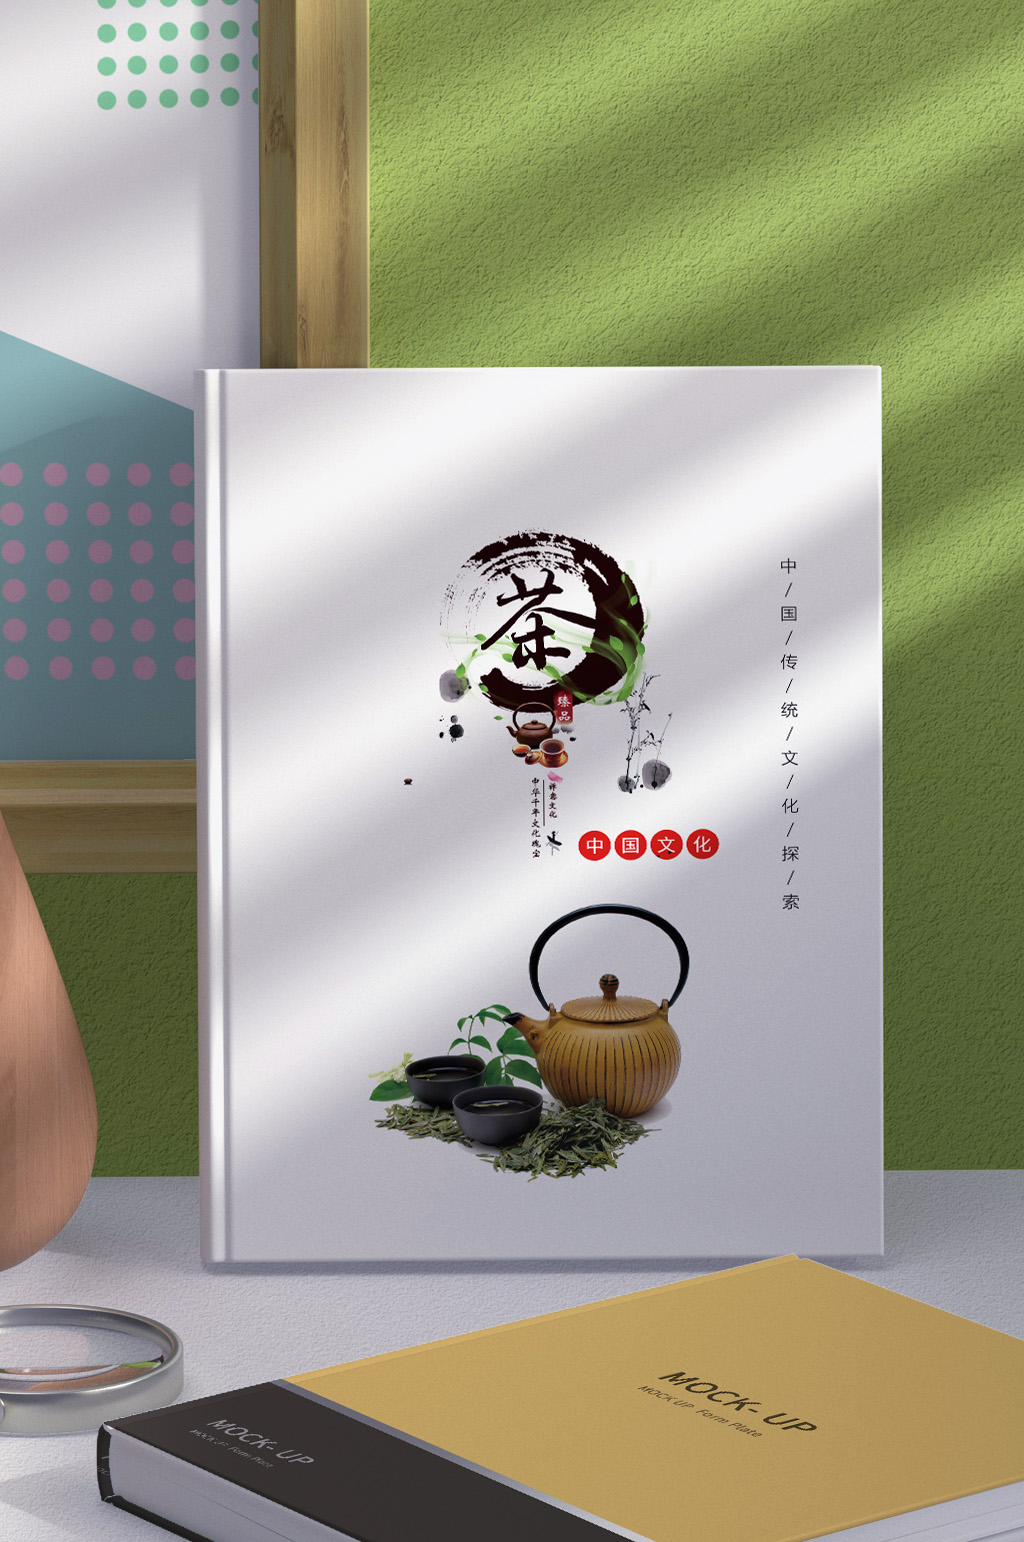 众图网独家提供茶叶画册封面模板素材免费下载,本作品是由宏图设计